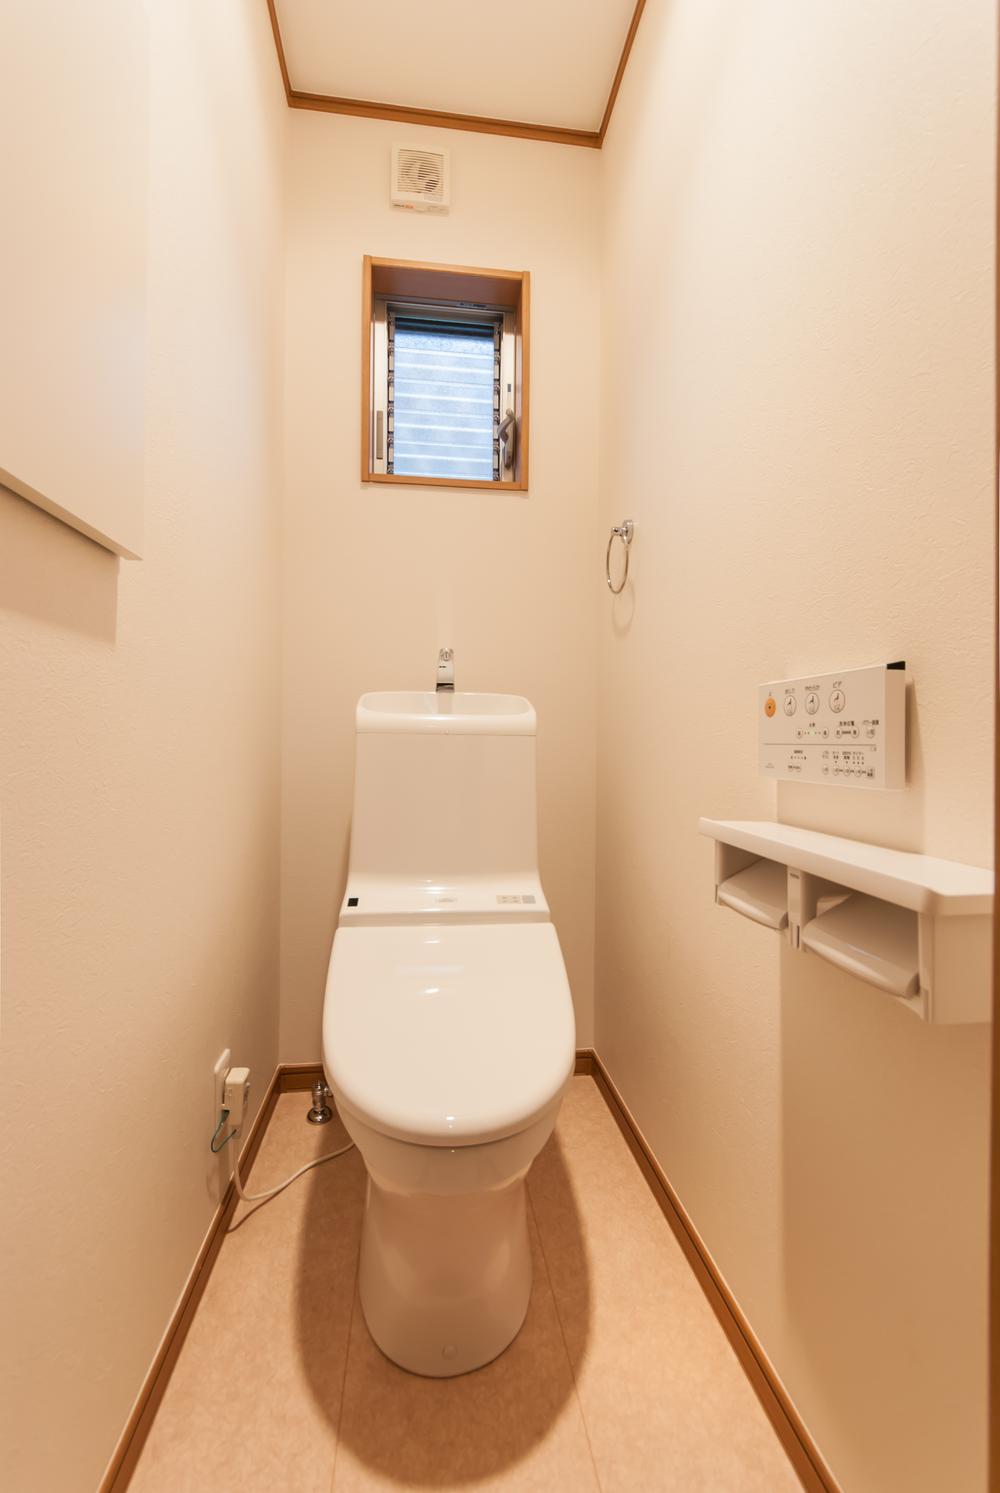 Toilet. Remote-controlled bidet toilet